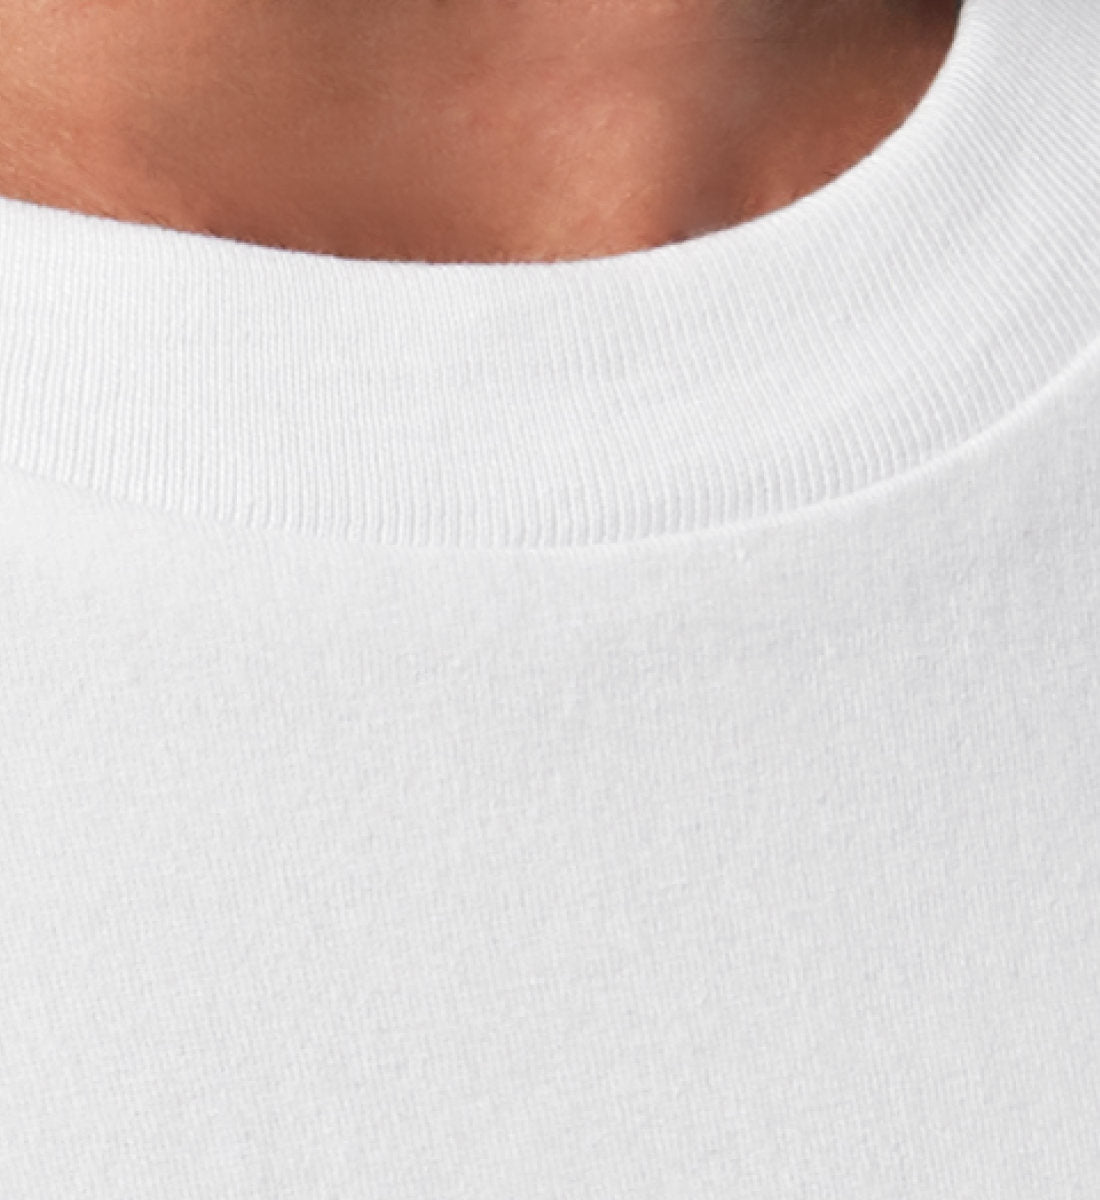 Weißes T-Shirt Unisex Relaxed Fit für Frauen und Männer bedruckt mit dem Design der Roger Rockawoo Kollektion and then Surf waves came along